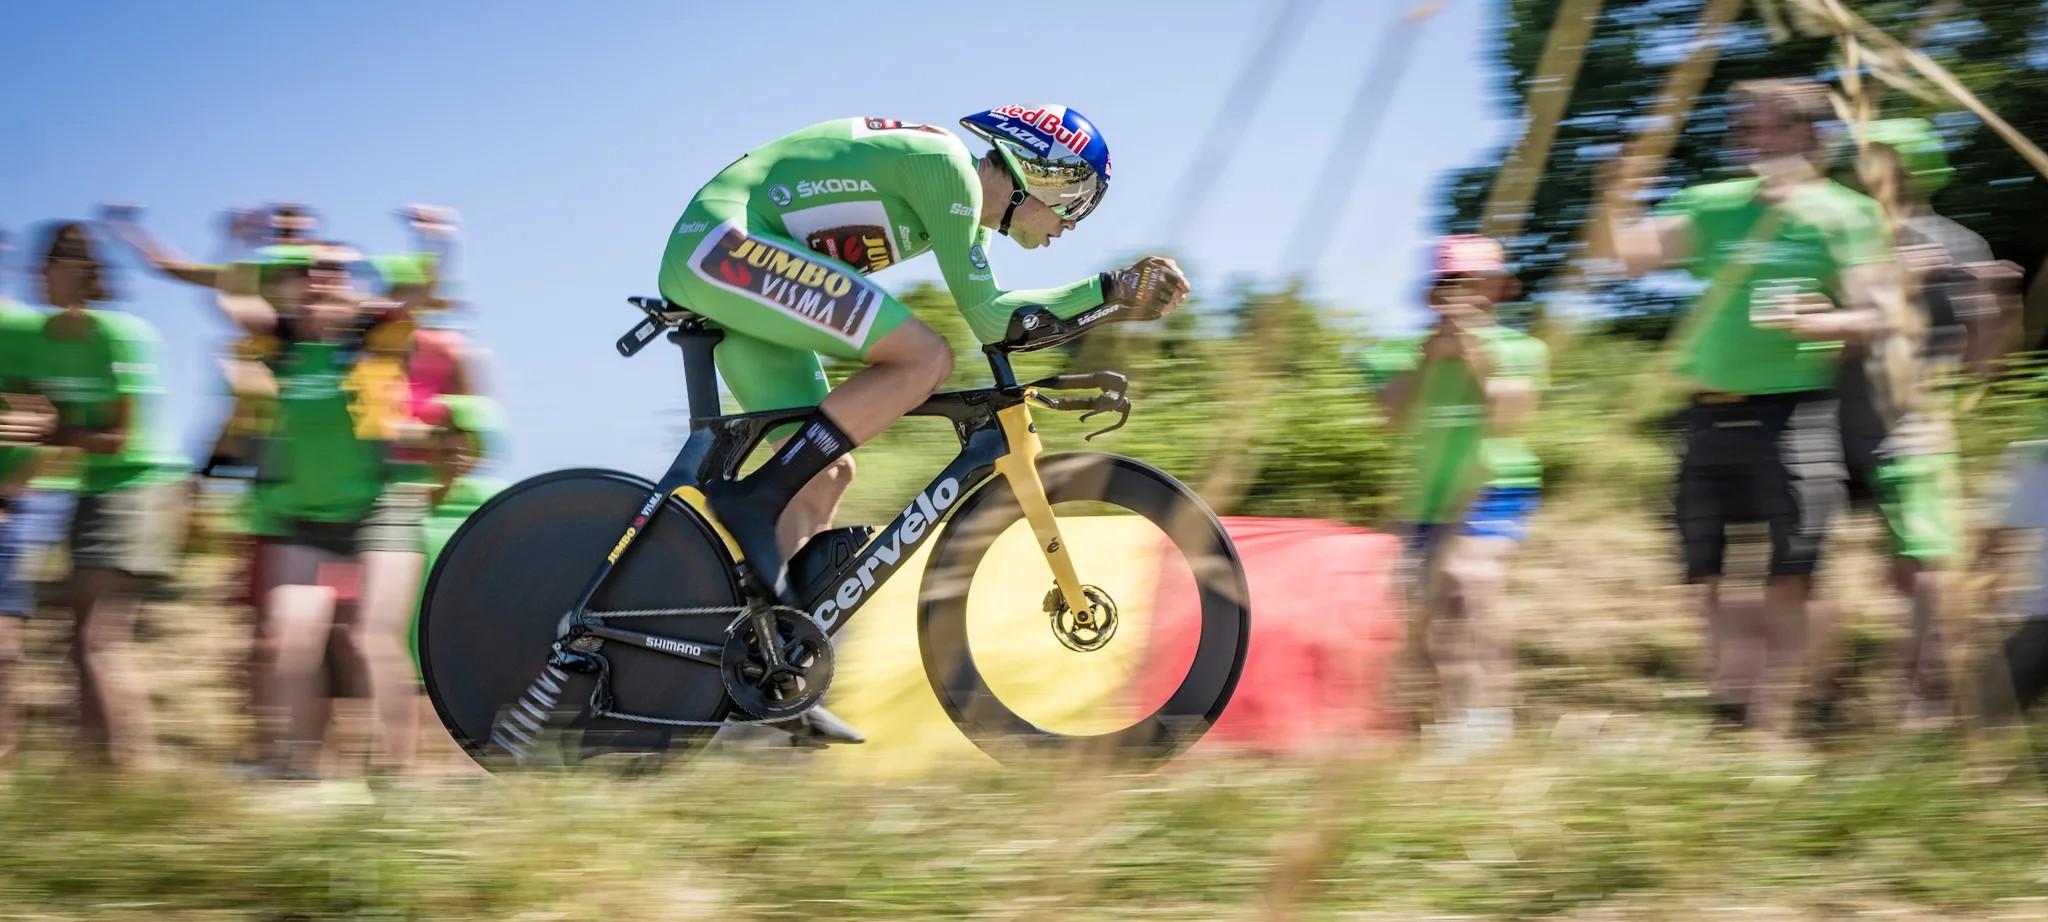 Wout s’offre une nouvelle victoire lors de l'avant-dernière étape du Tour de France.